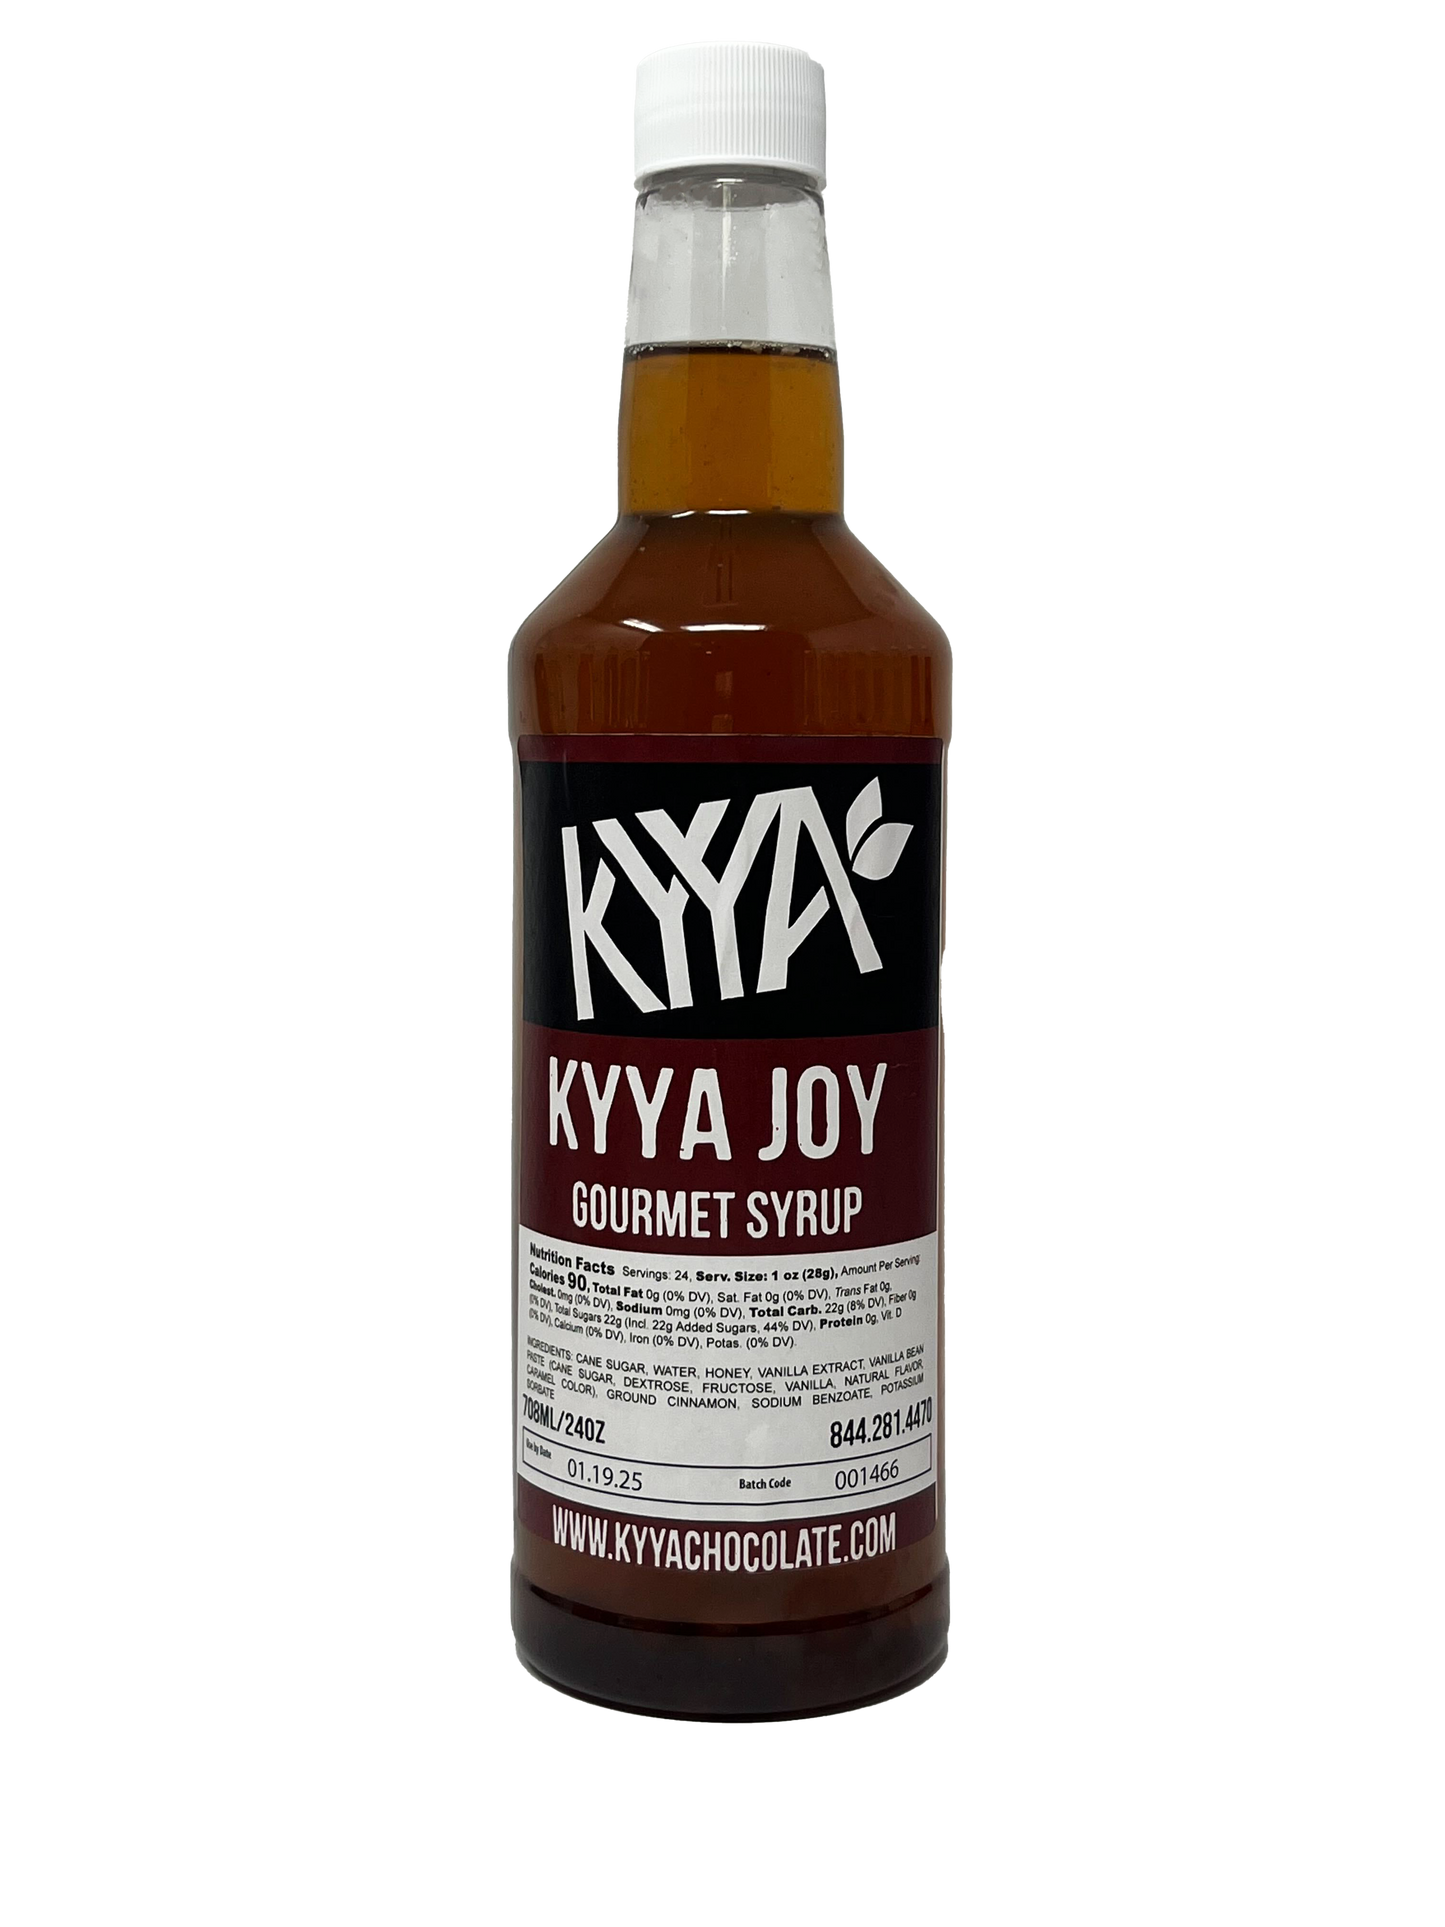 Kyya Joy Gourmet Syrup